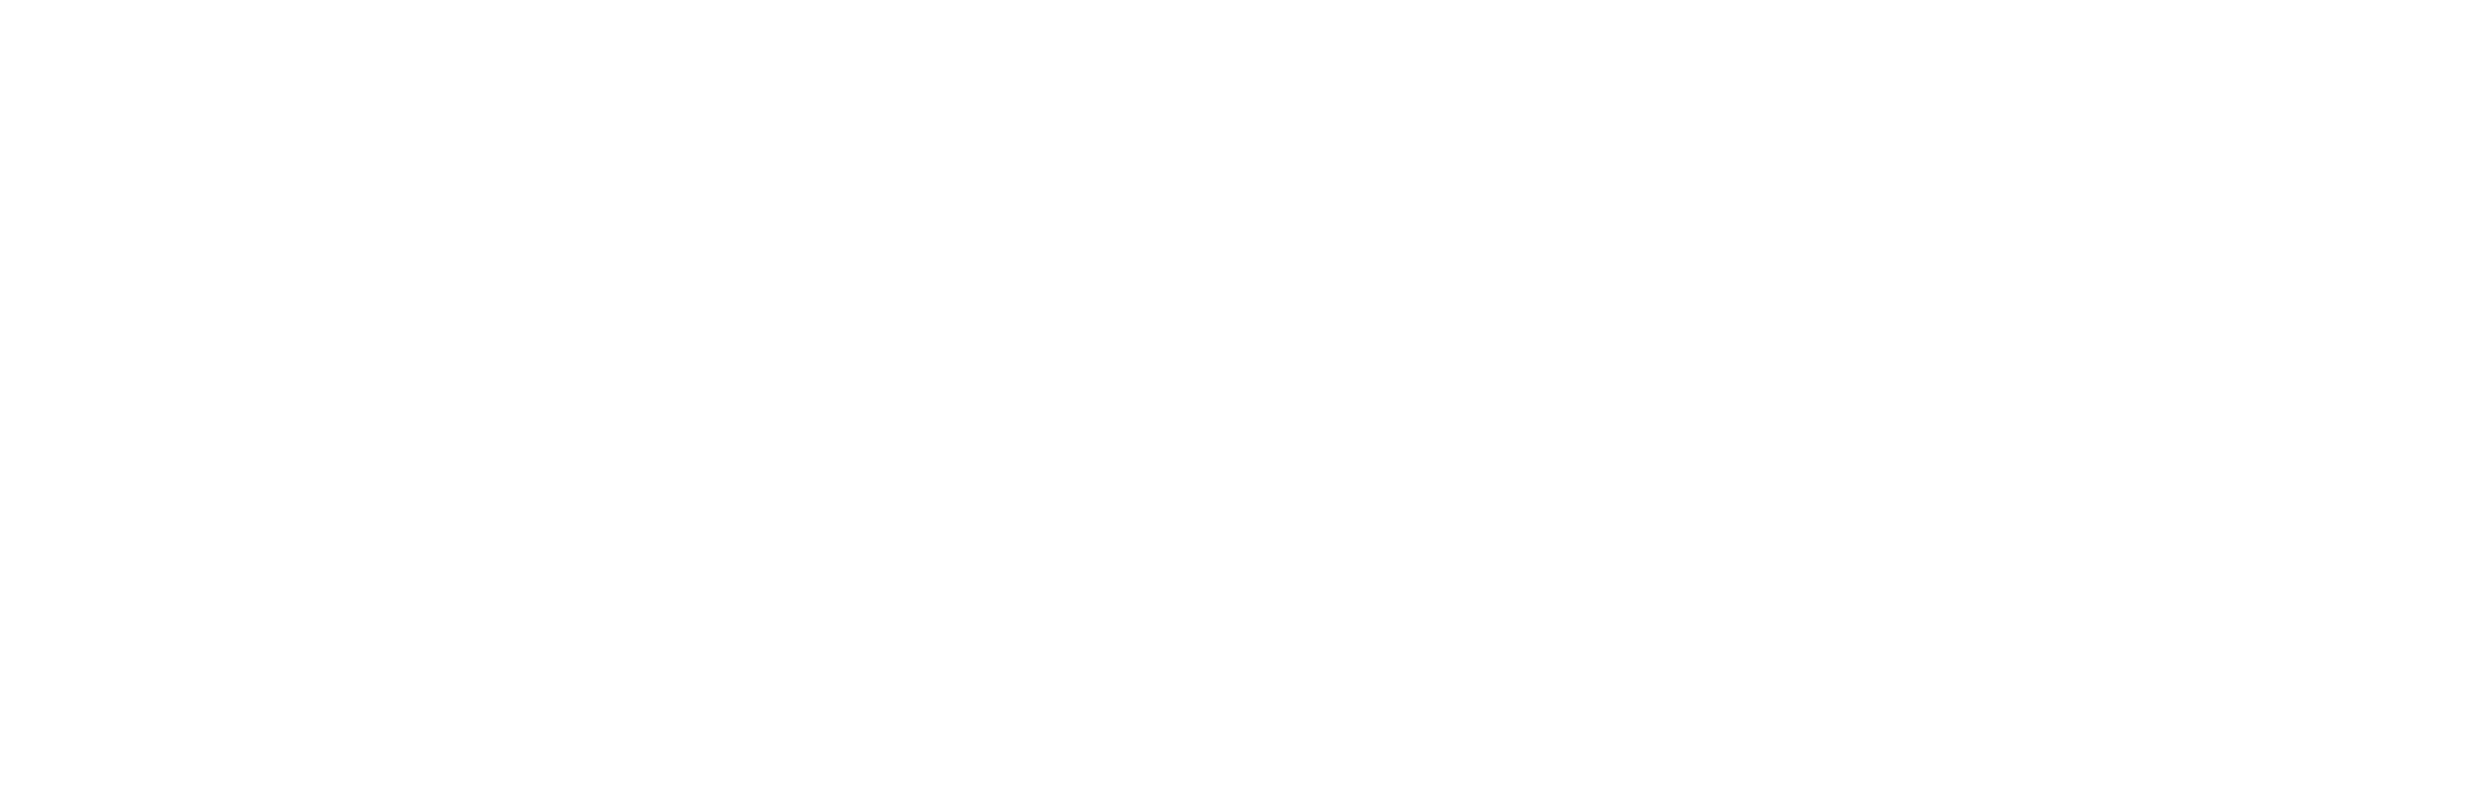 Maskells Estate Agents London - logo